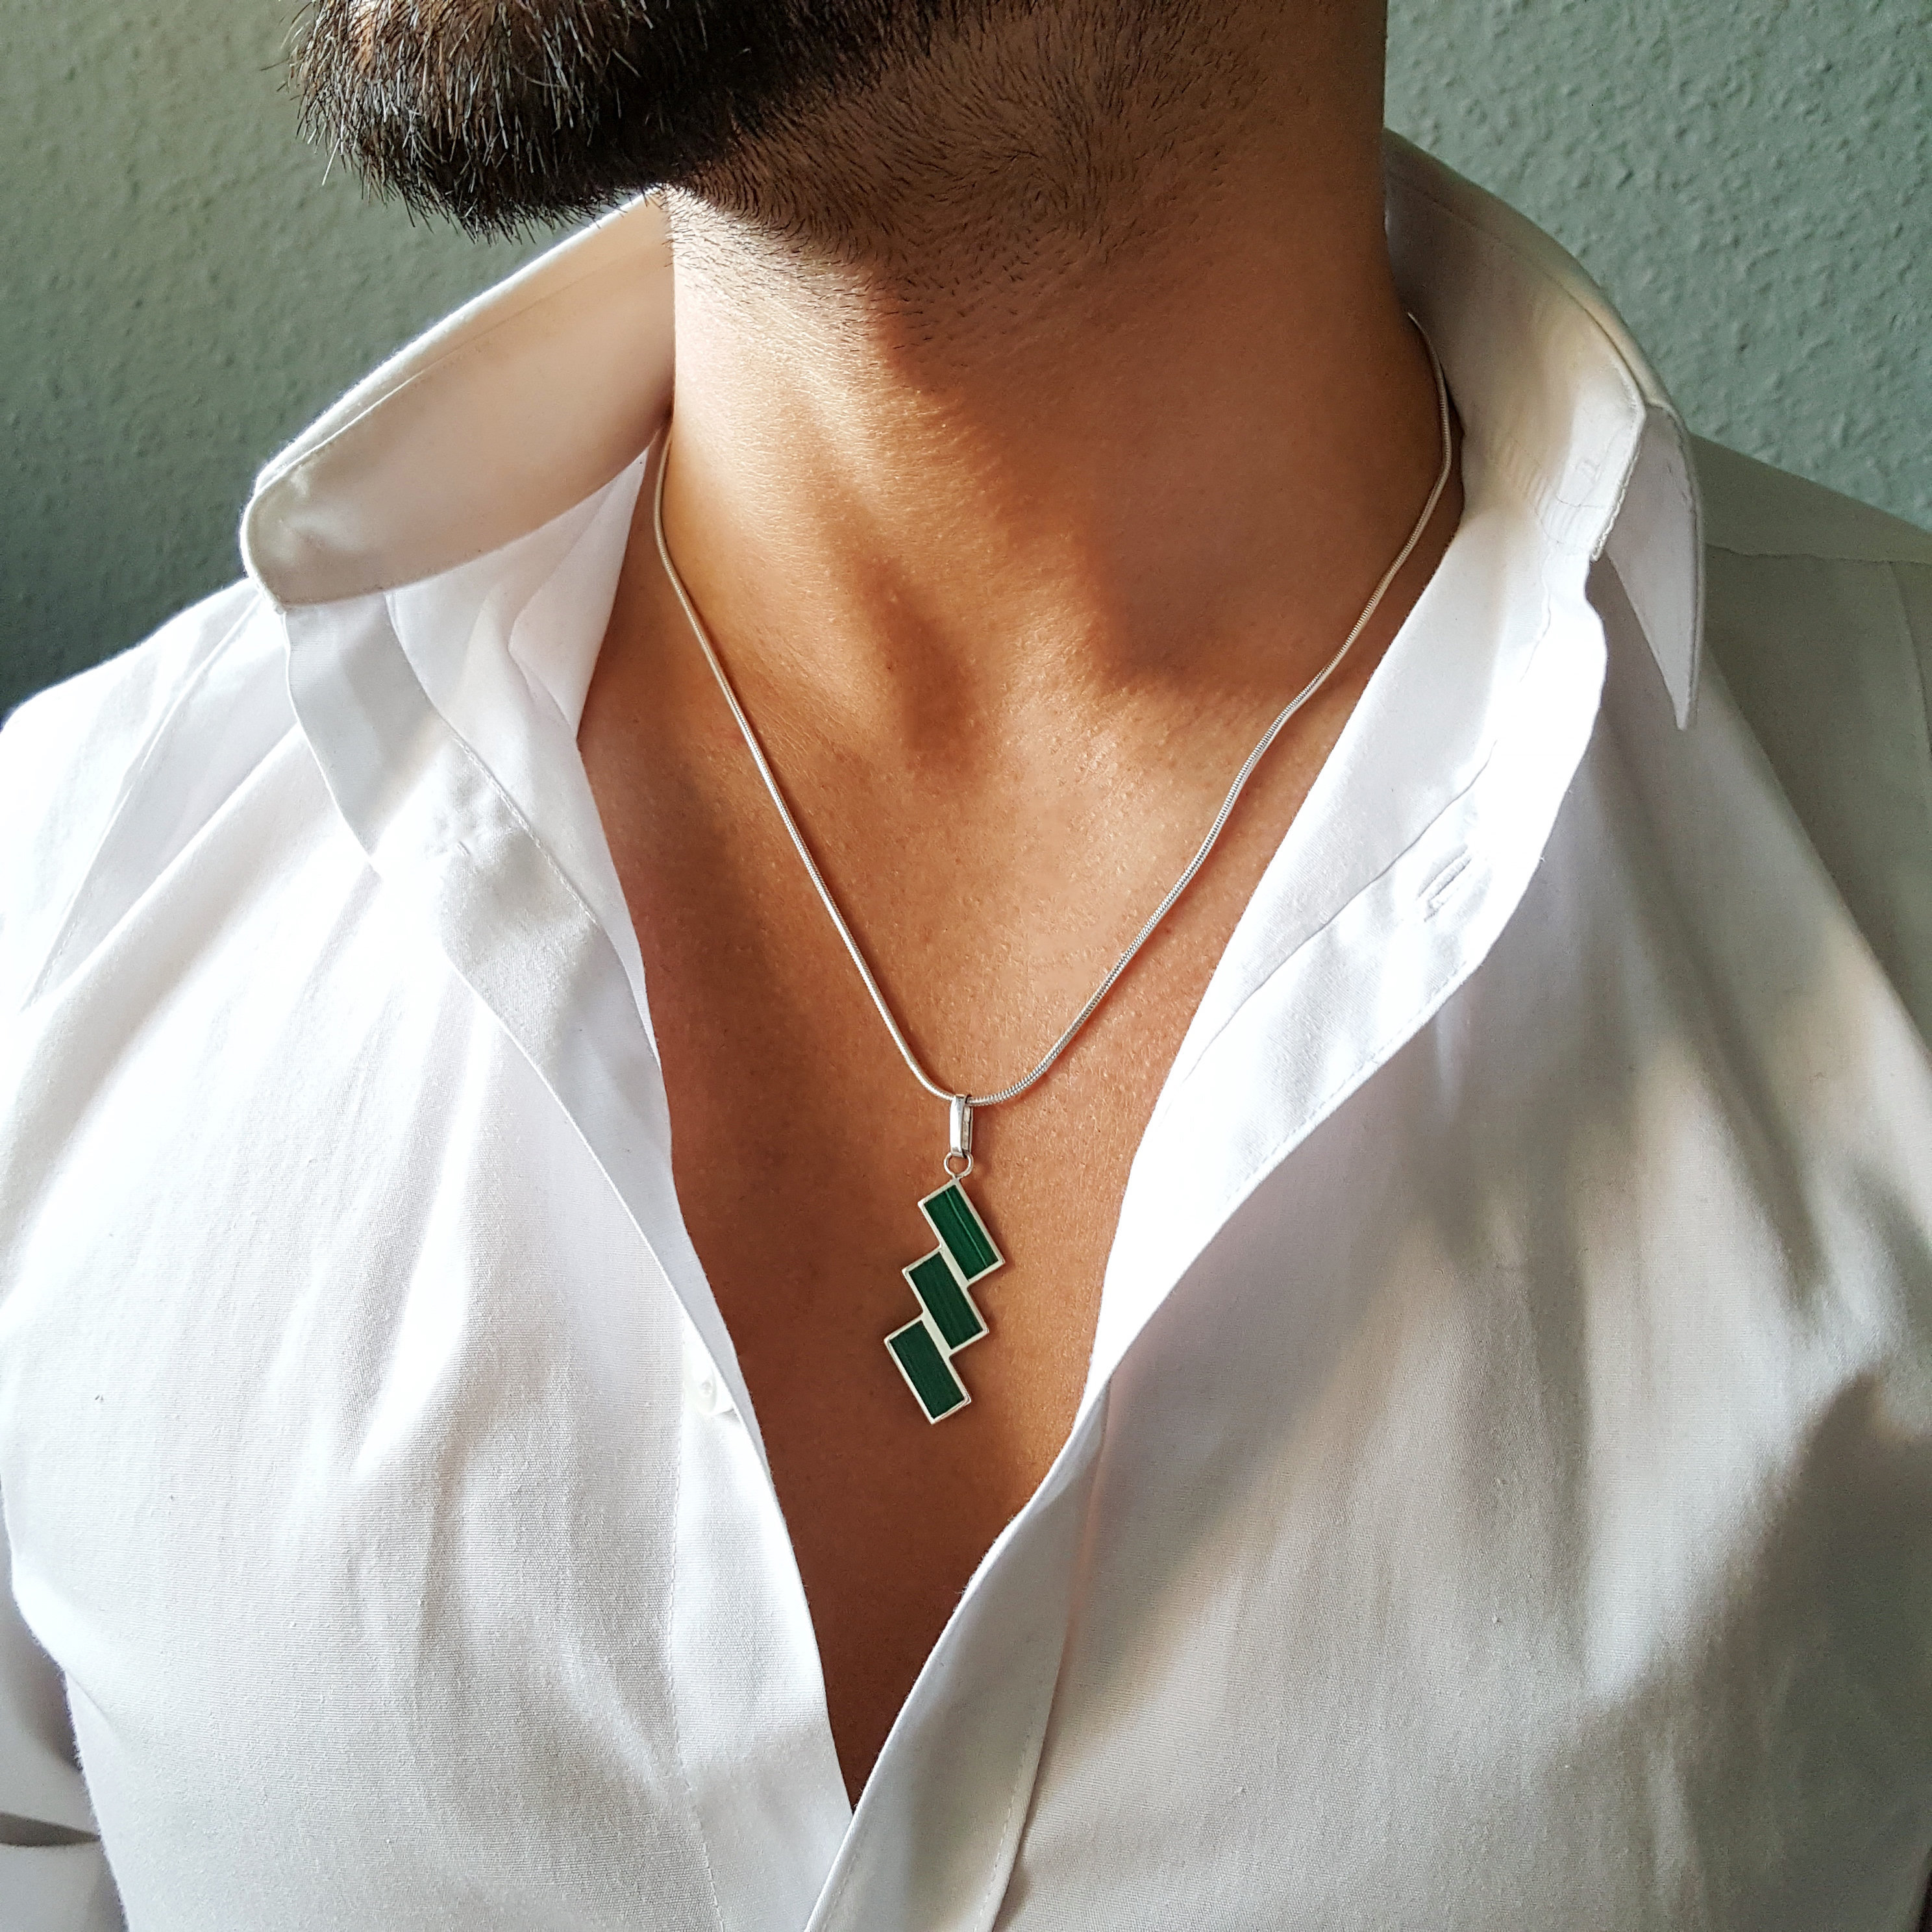 Buy Gemstone Necklace, Genuine Green Malachite Necklace, Malachite Crystal  Necklace, Natural Malachite Bead Choker, Malachite Necklace Men Online in  India - Etsy